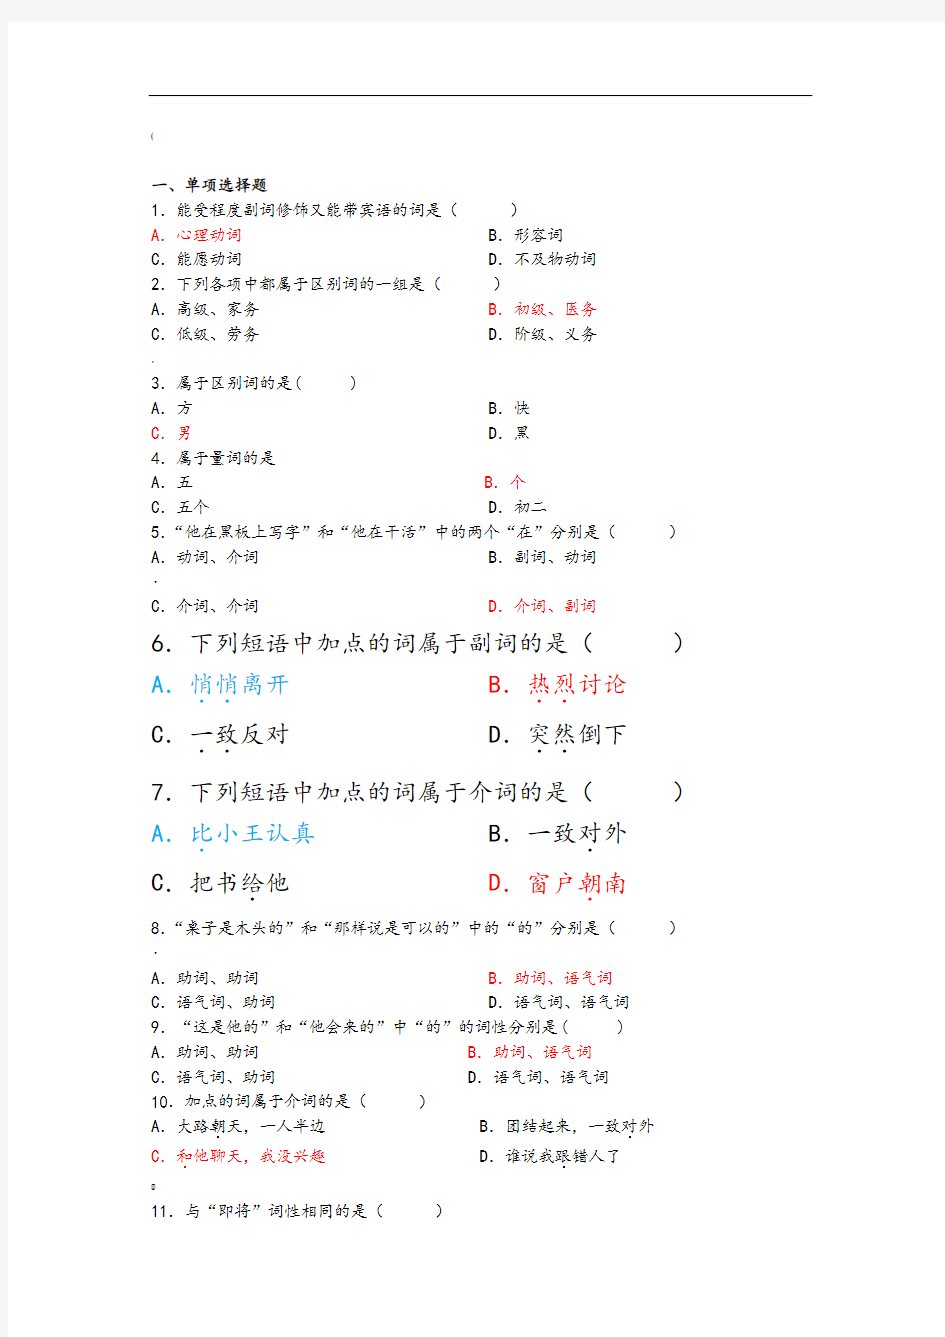 现代汉语语法练习-词类